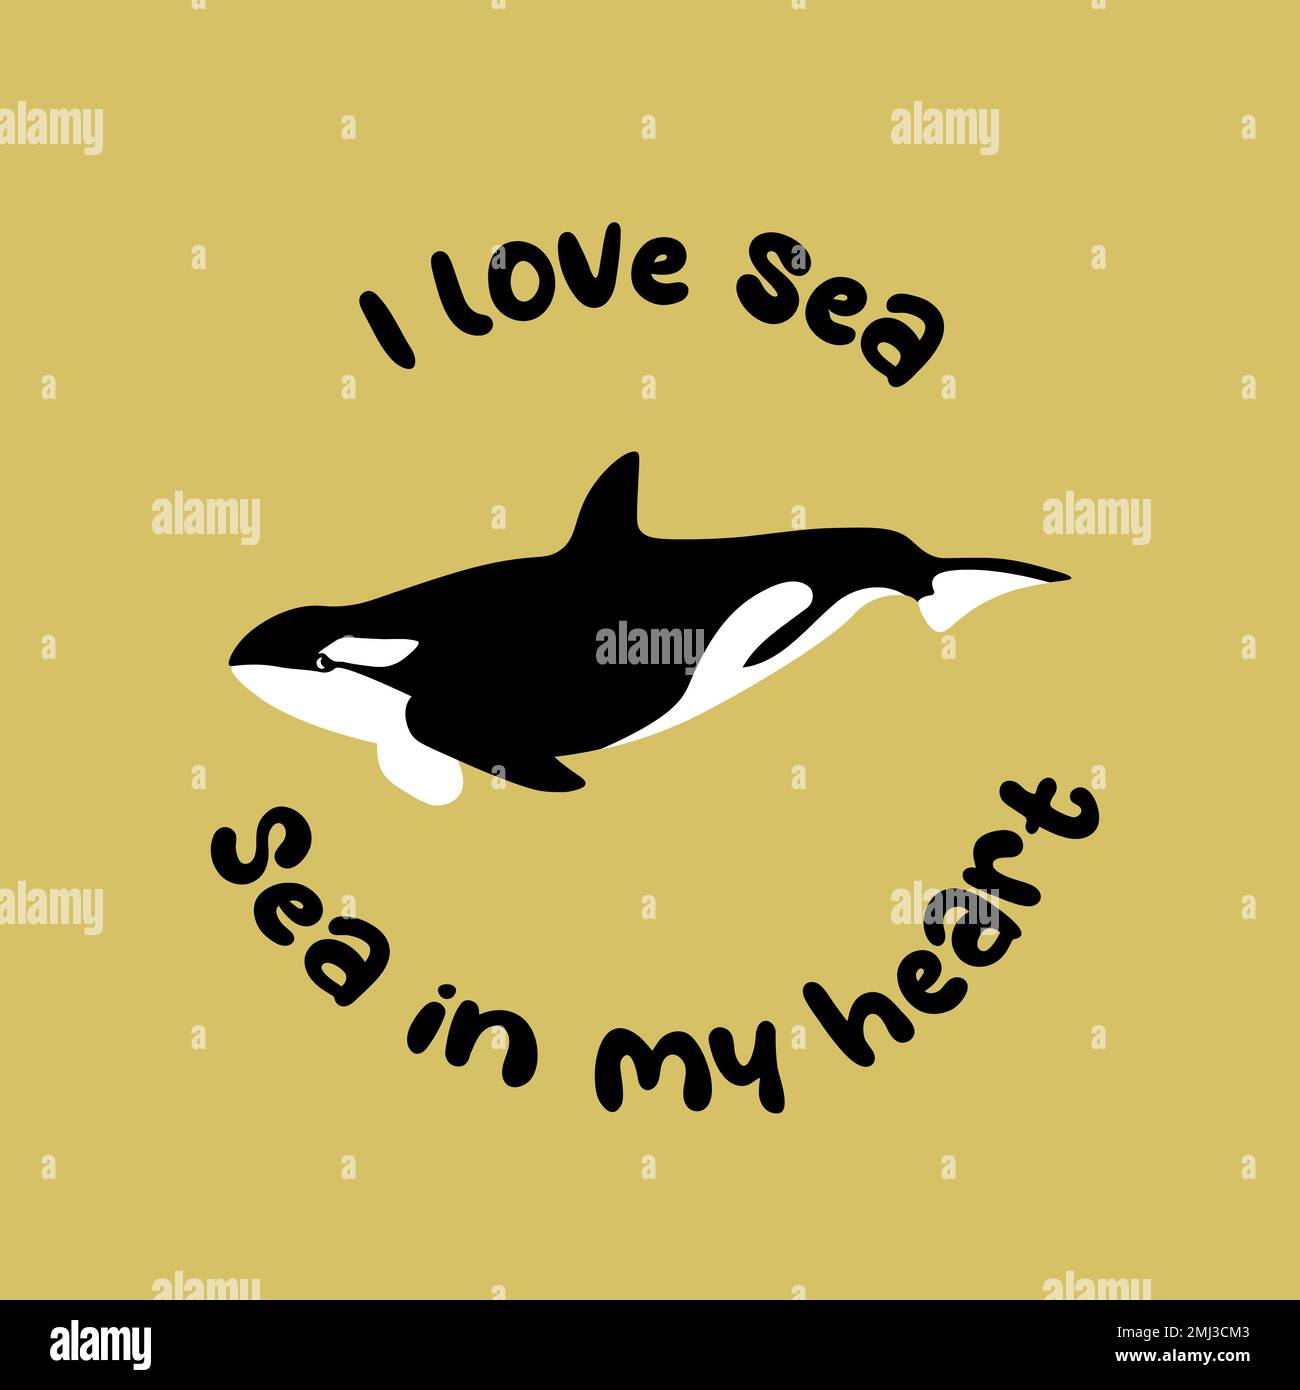 Vektor-Ozean-Illustration mit Killerwal. Ich liebe das Meer, das Meer in meinem Herzen - moderne Schriftzeichen. Unterwassertiere. Ökologisches Design für Banner, Flyer Stock Vektor